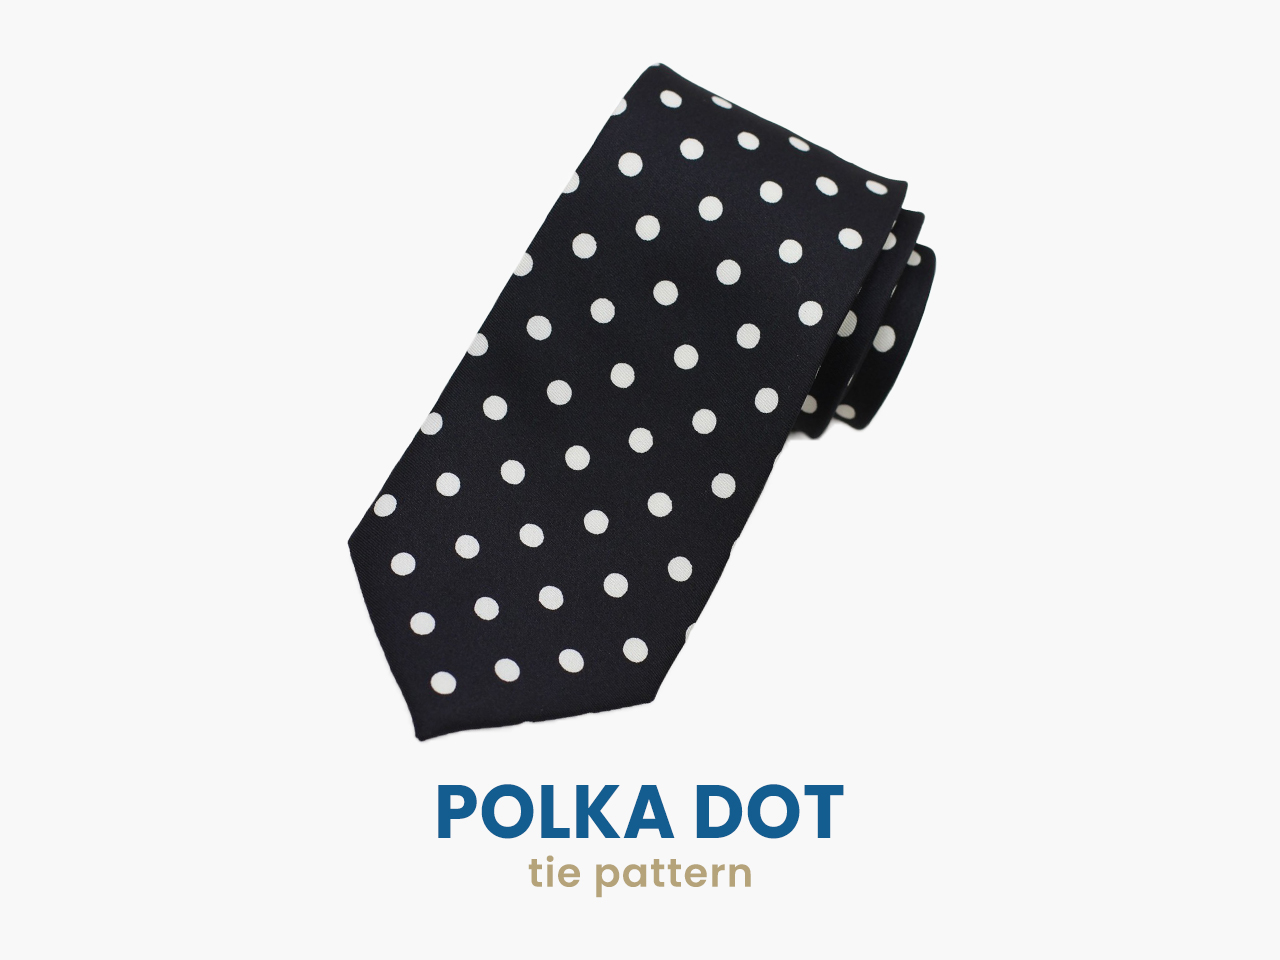 polka dots tie pattern